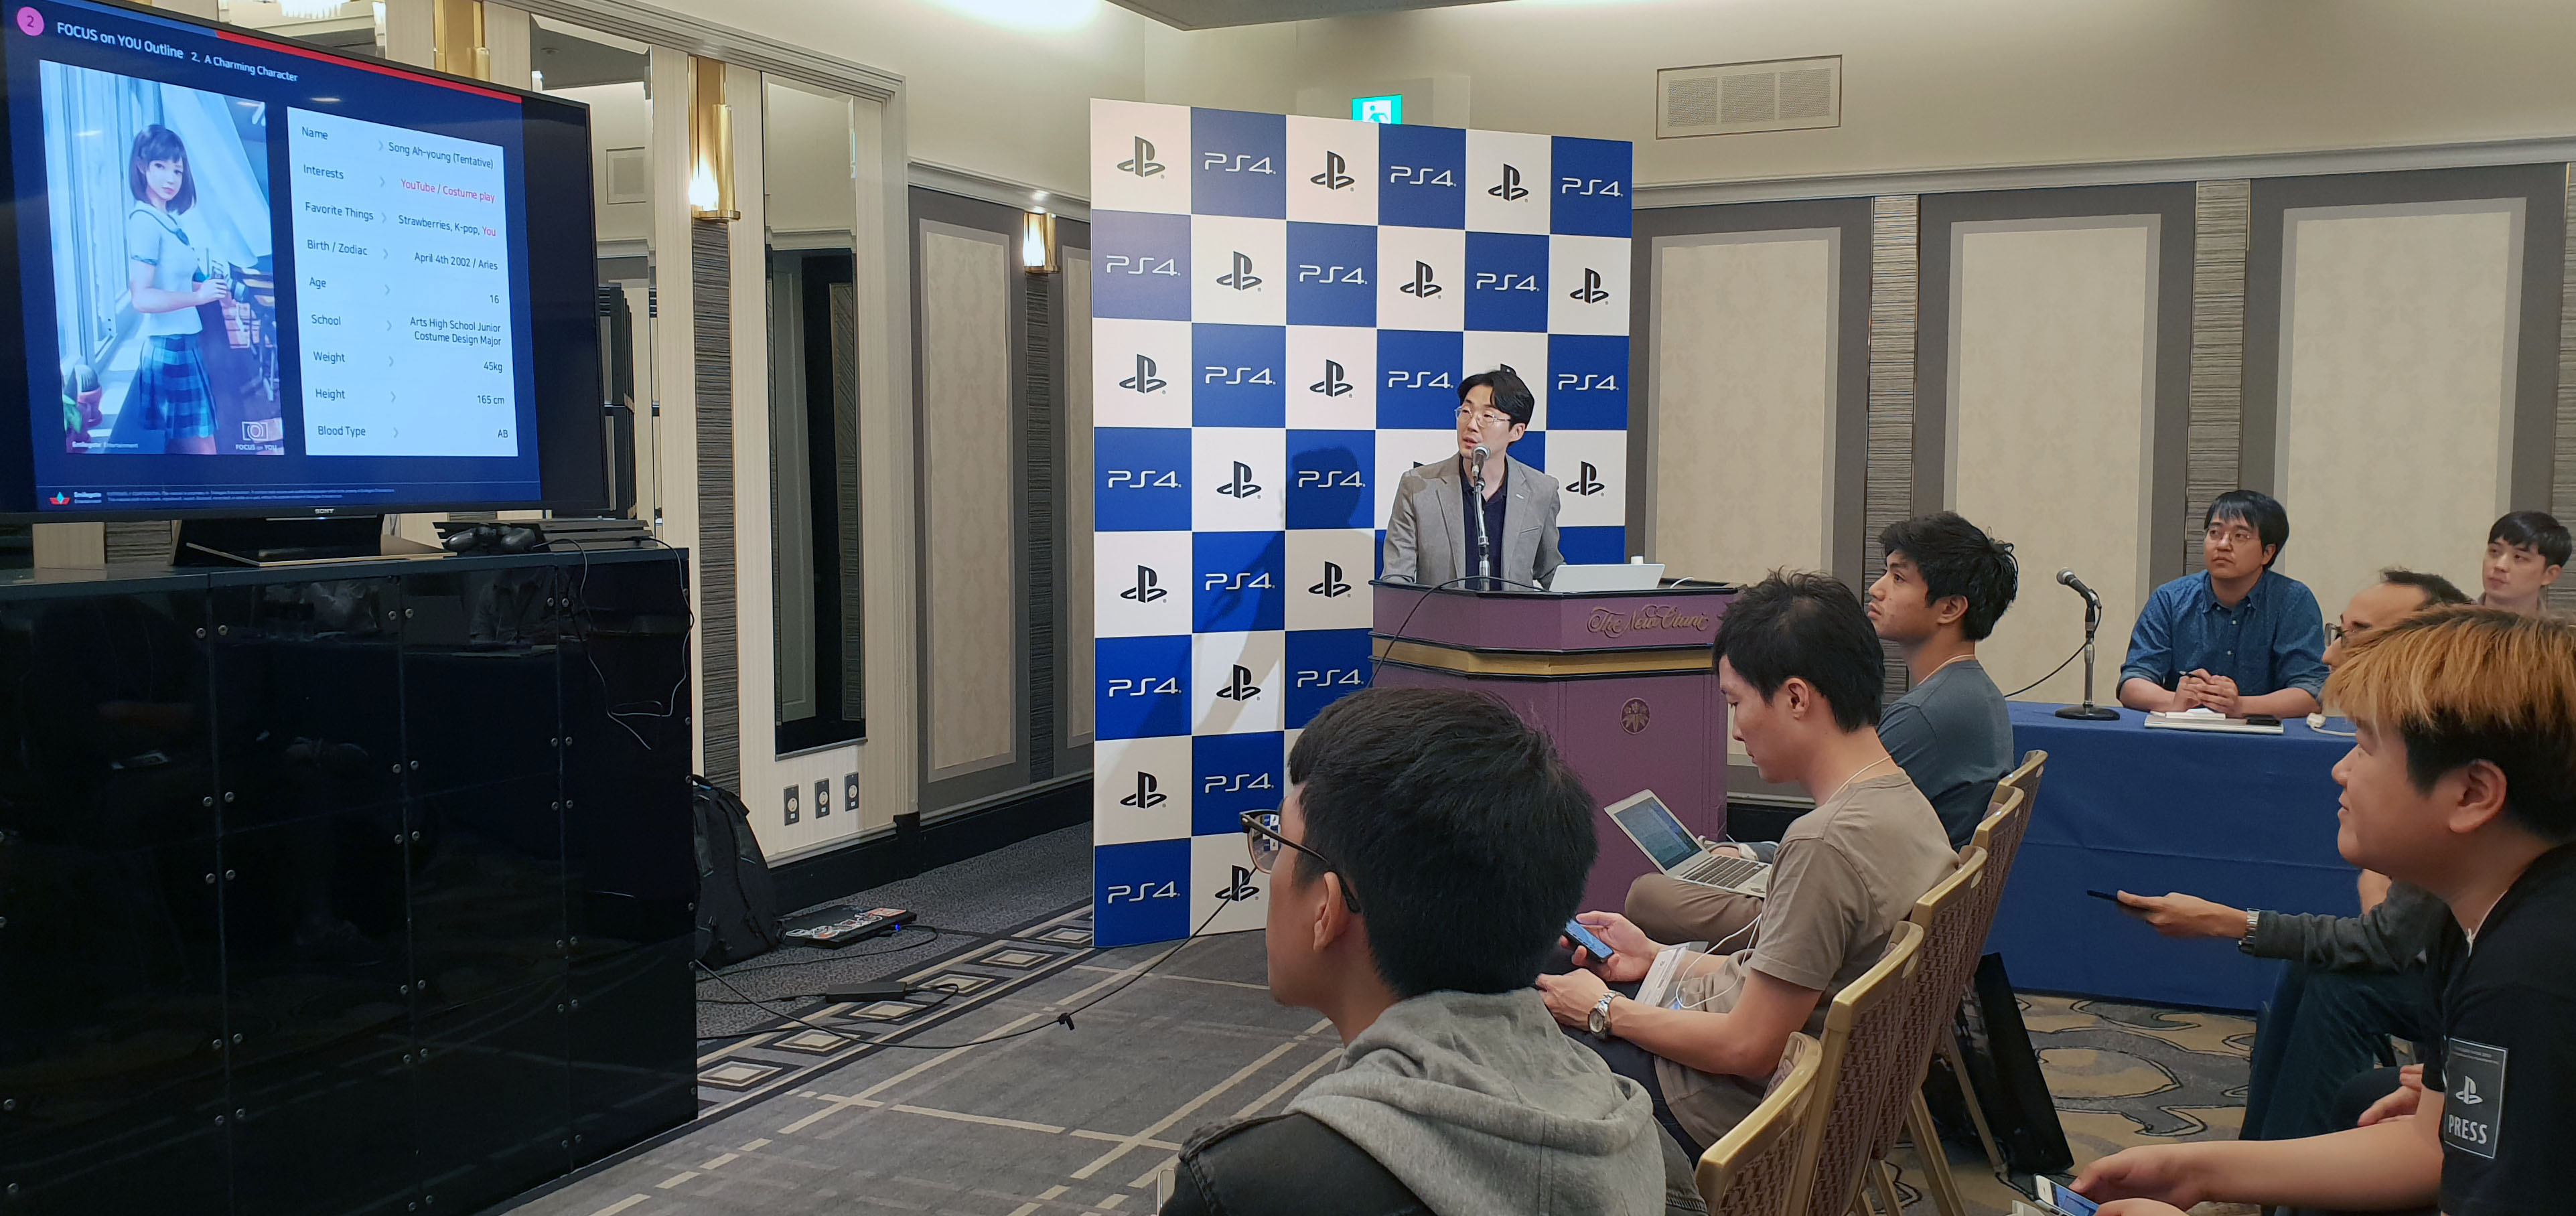 [스마일게이트] 도쿄게임쇼 VR 미디어 세션 참가 사진_18.09.27.jpg